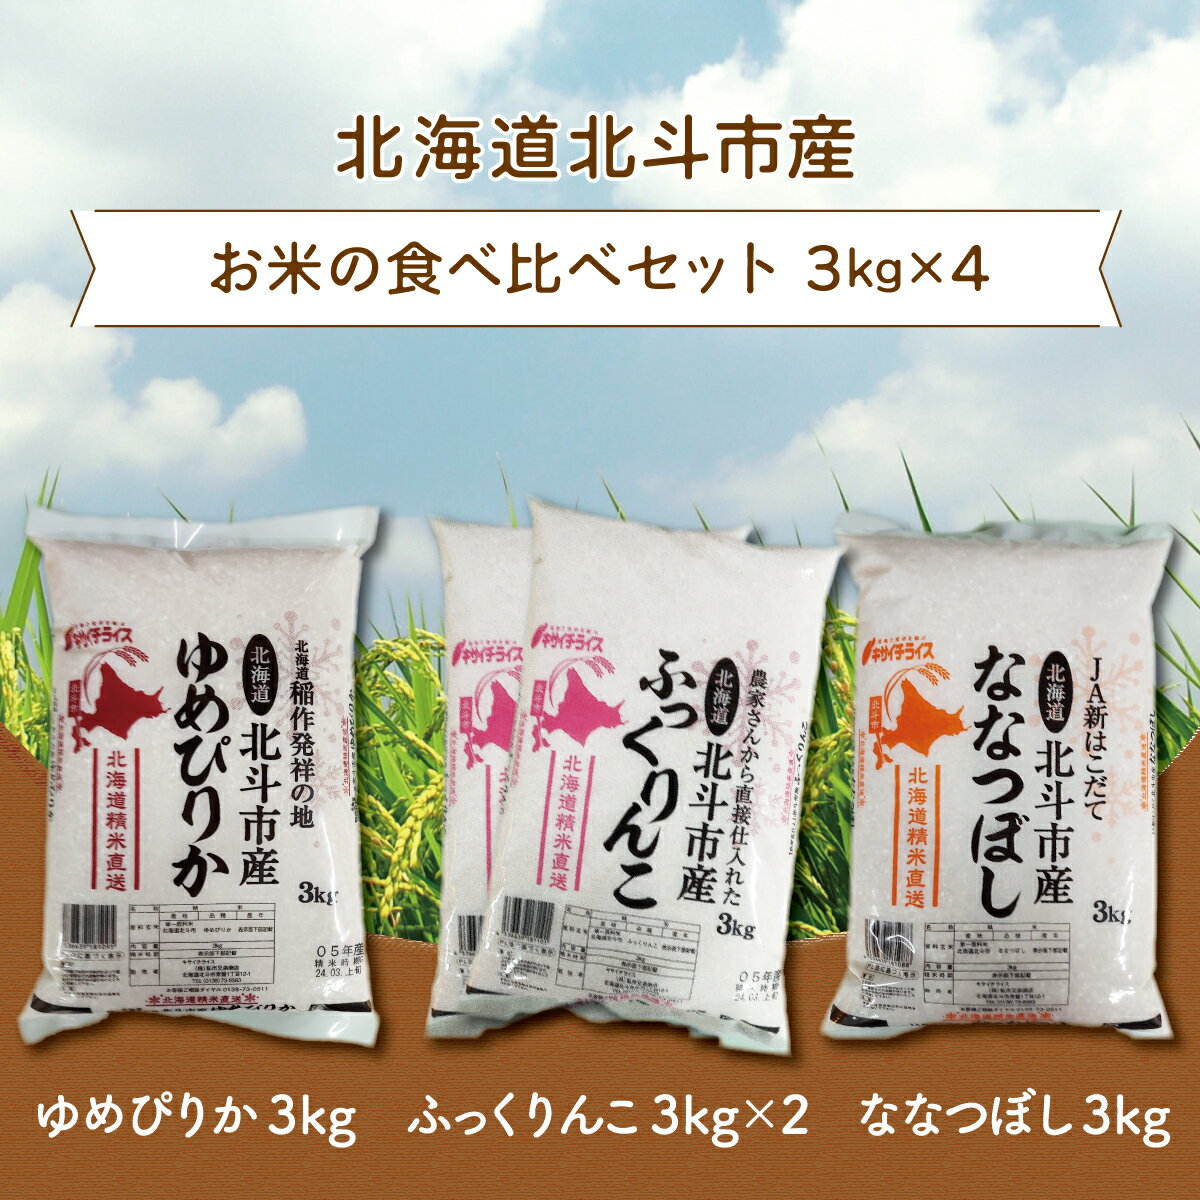 【ふるさと納税】北海道北斗市産米食べ比べセット3kg×4 【